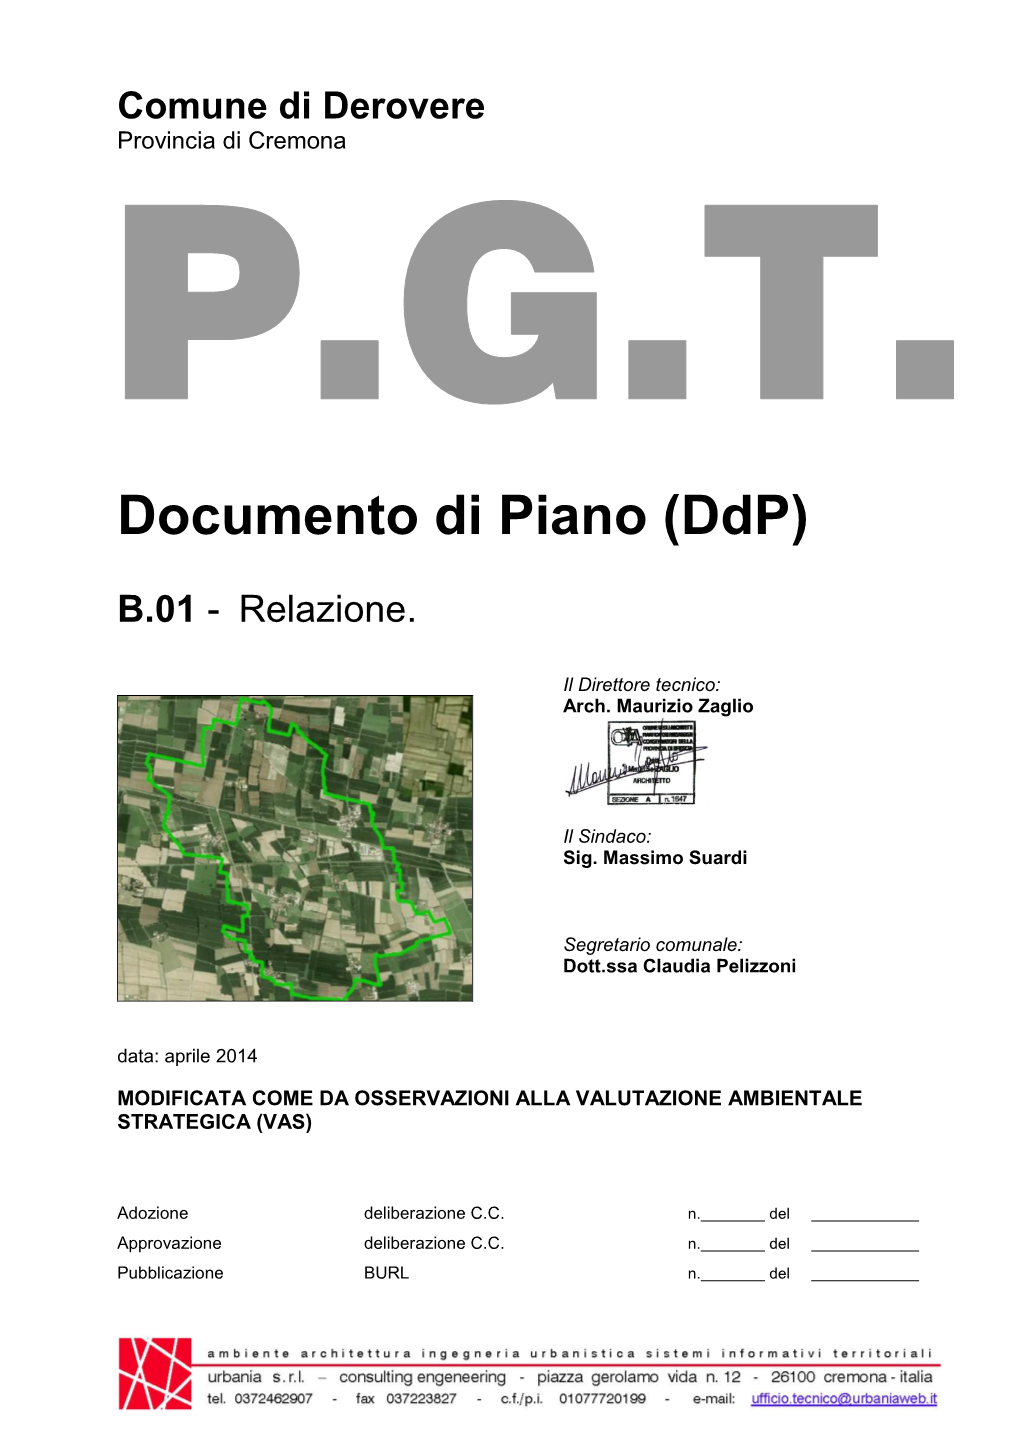 Documento Di Piano (Ddp)